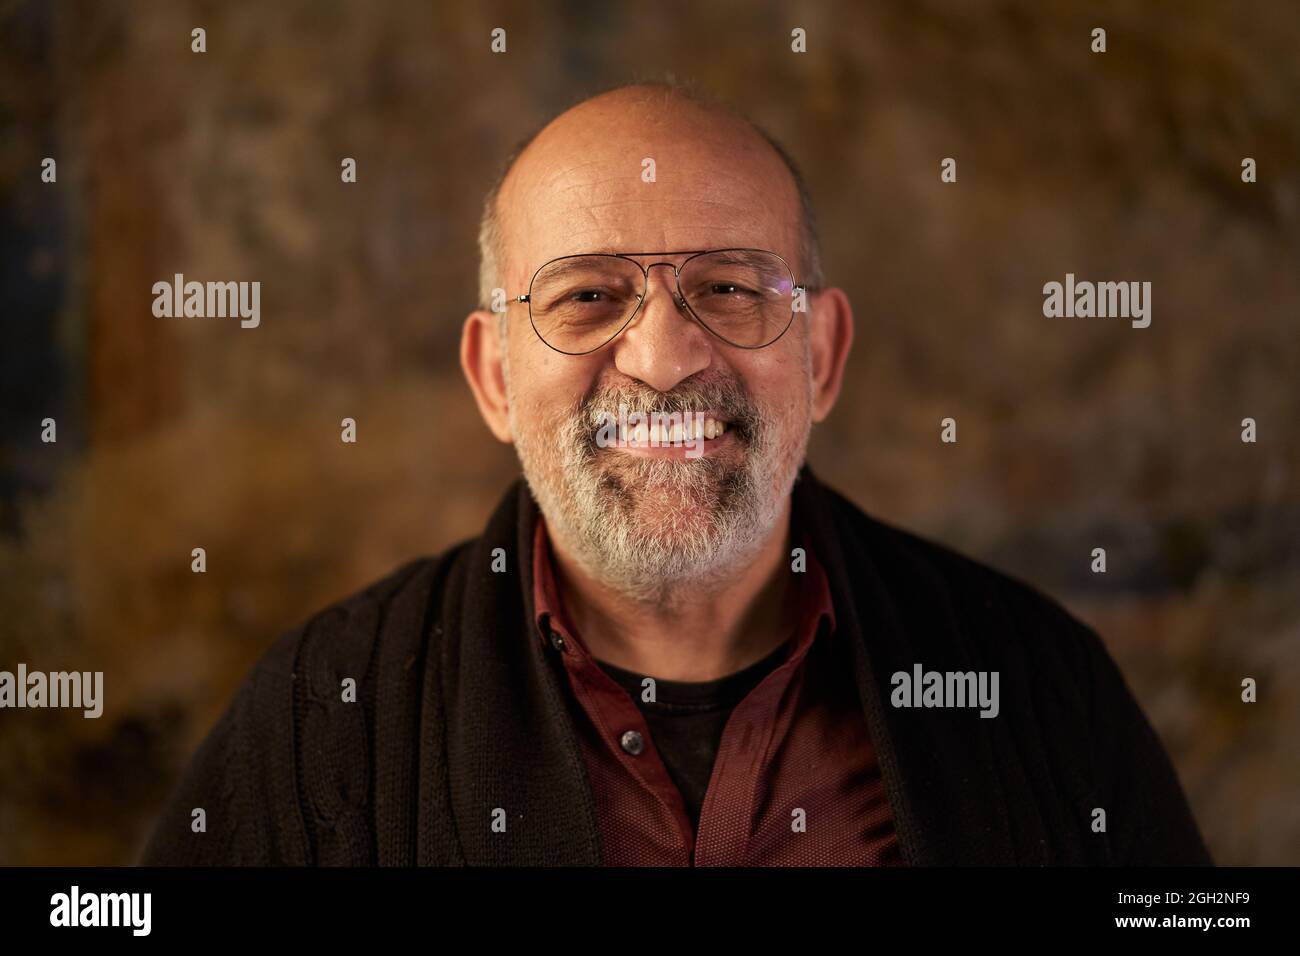 Ritratto di un uomo caucasico sorridente di mezza età che guarda la fotocamera. Aspetto di una persona più anziana Foto Stock